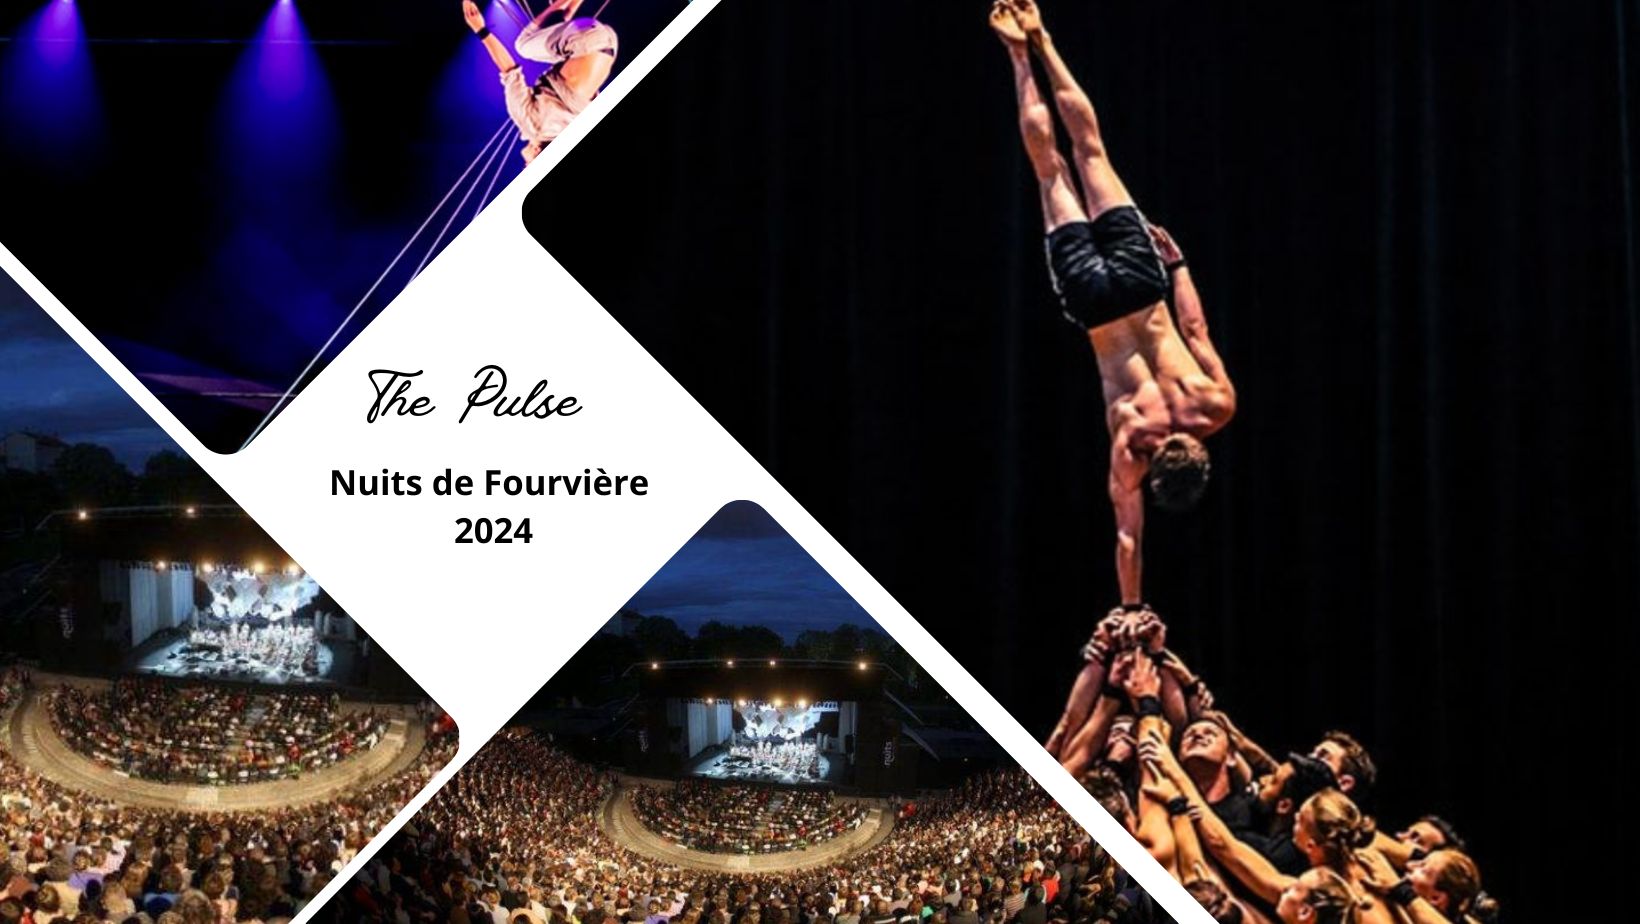 The Pulse pour la première fois en France aux Nuits de Fourvière pour l'ouverture de cette édition 2024